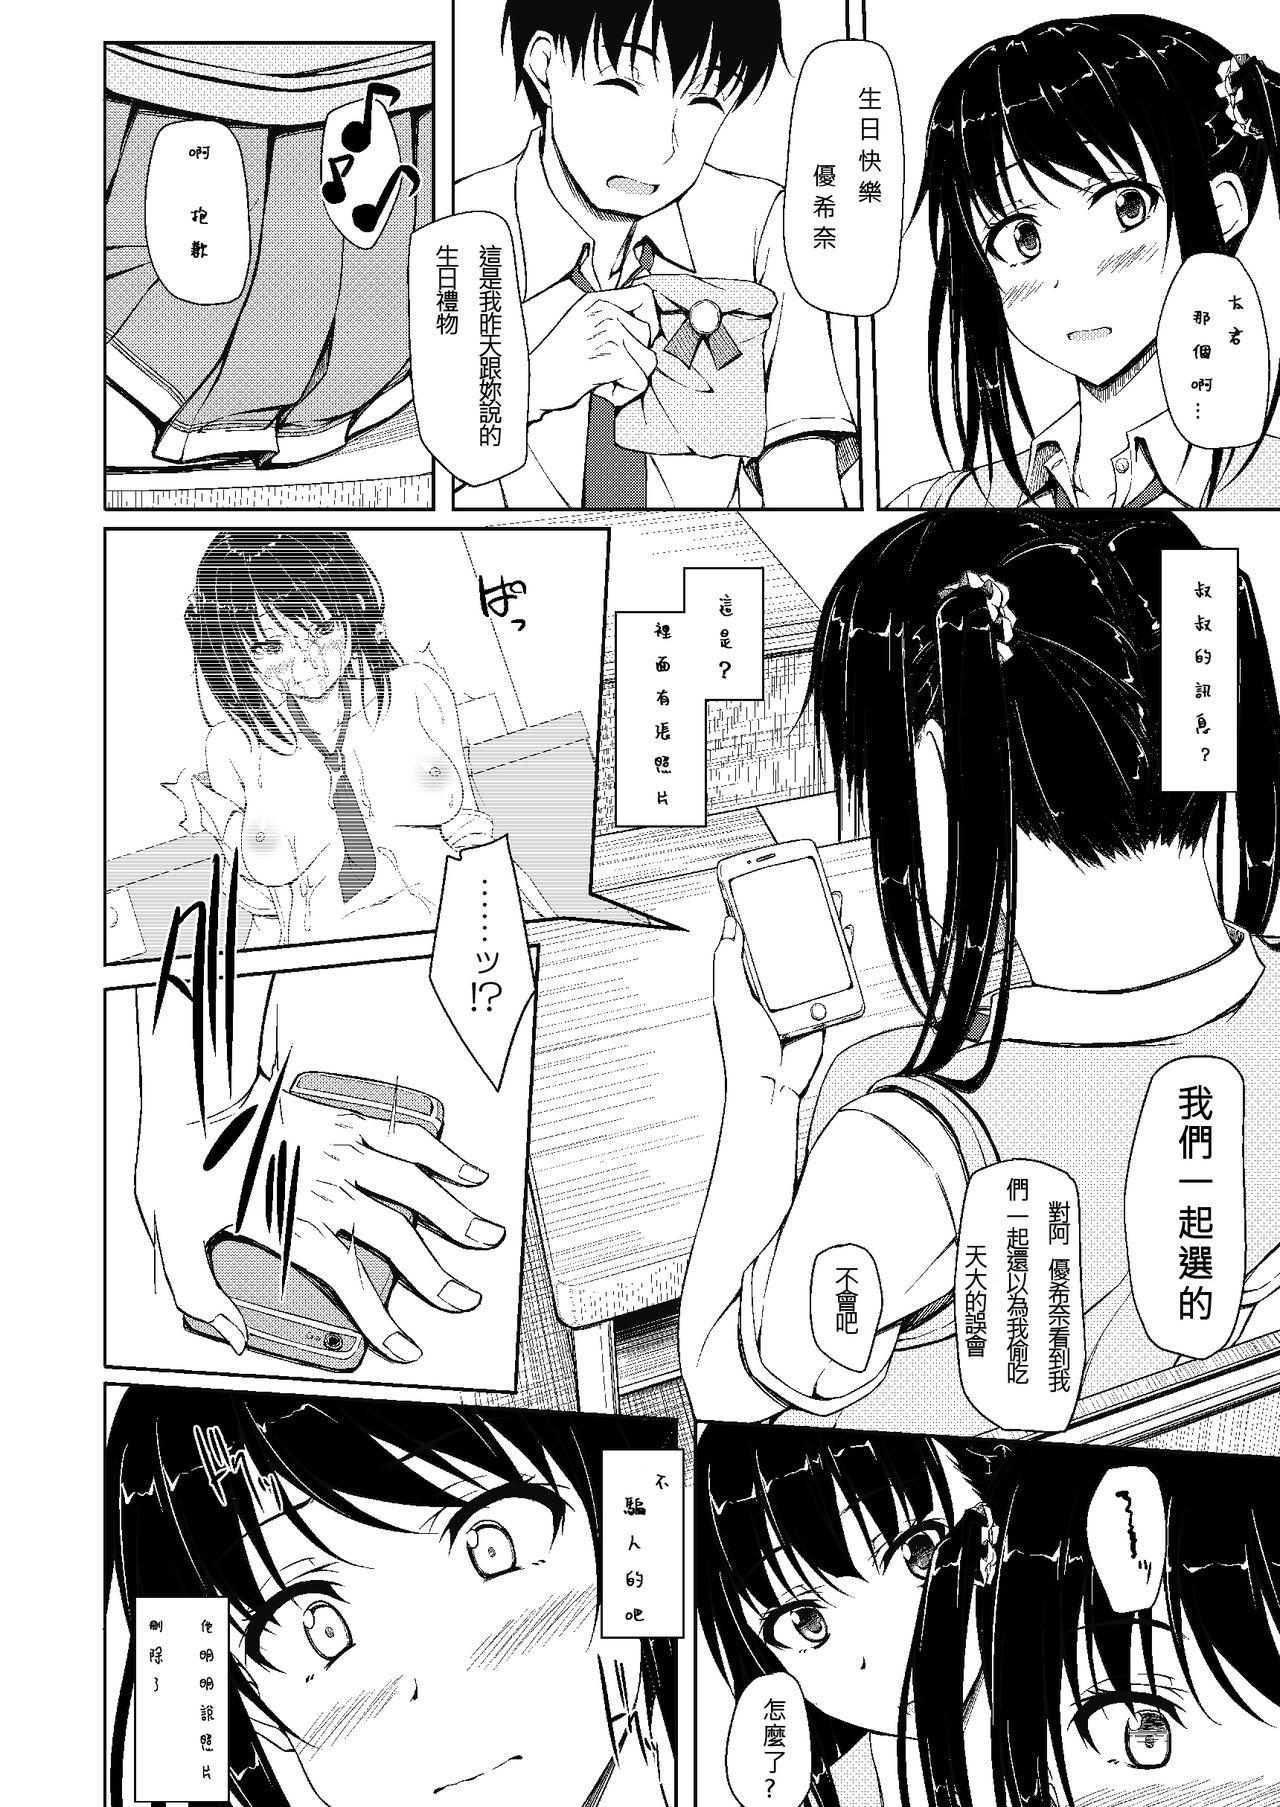 8teenxxx Tachibana Yukina Enkou Nisshi 2 "Watashi… Shicchatta kara…" - Original Passivo - Page 6